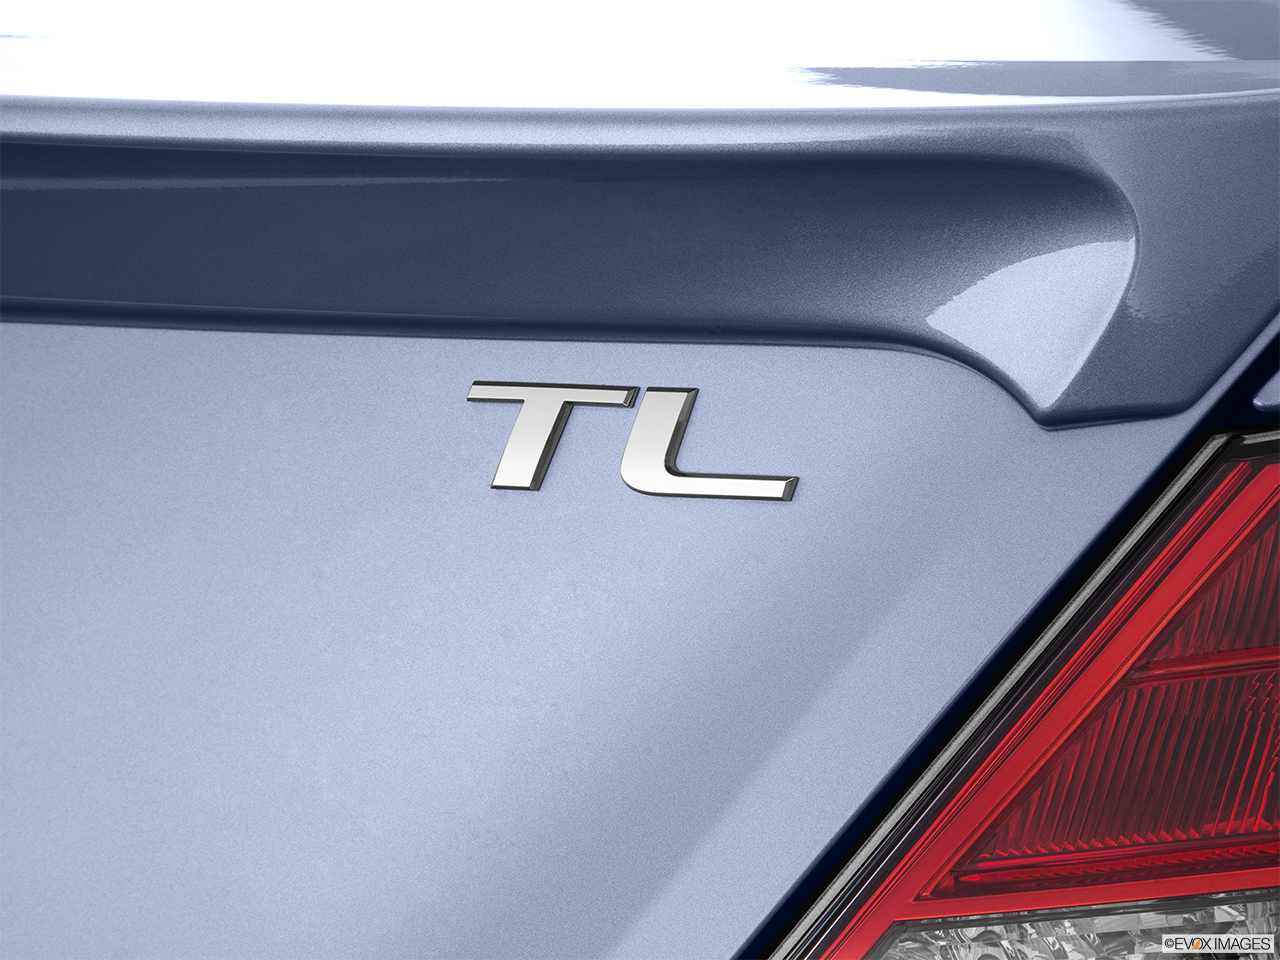 2012 Acura TL TL Exterior Bonus Shots (no set spec) 